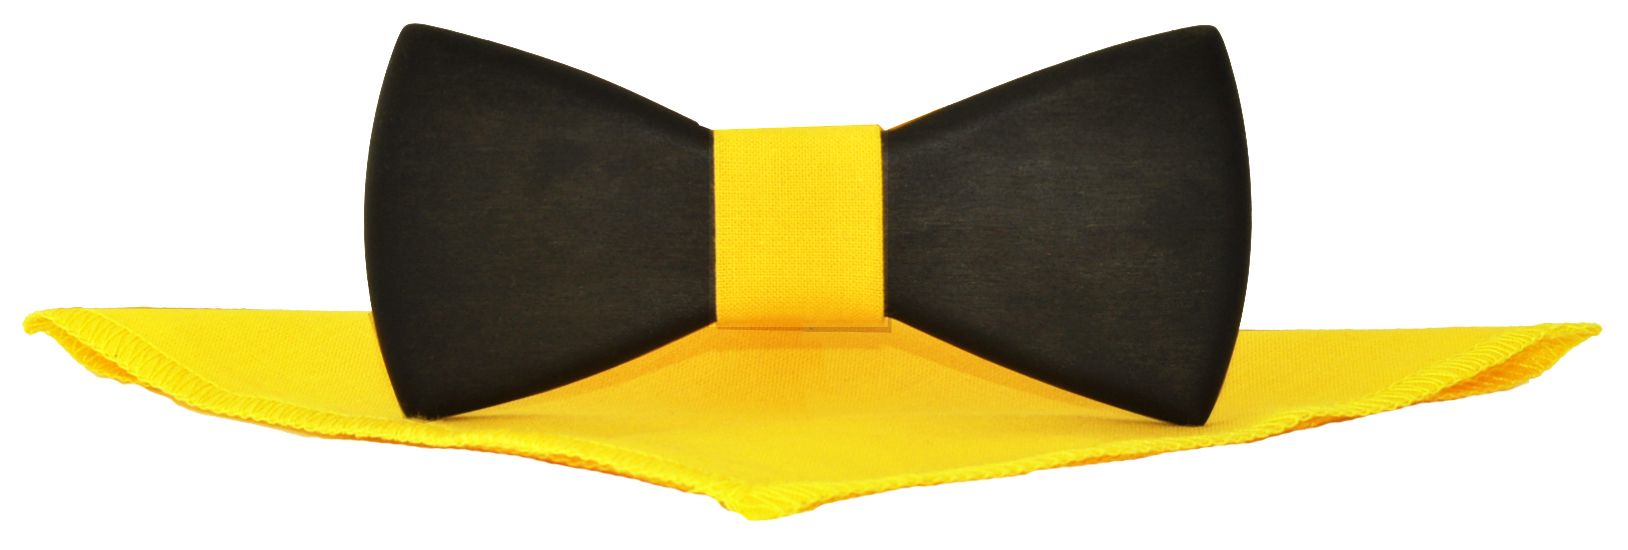 Деревянная галстук-бабочка черная с ярко-желтым платком описание: Фасон - Фигурная, Материал - Дерево, Цвет - Черный, желтый, Размер - 11 см. х 5 см., Страна производства - Россия.